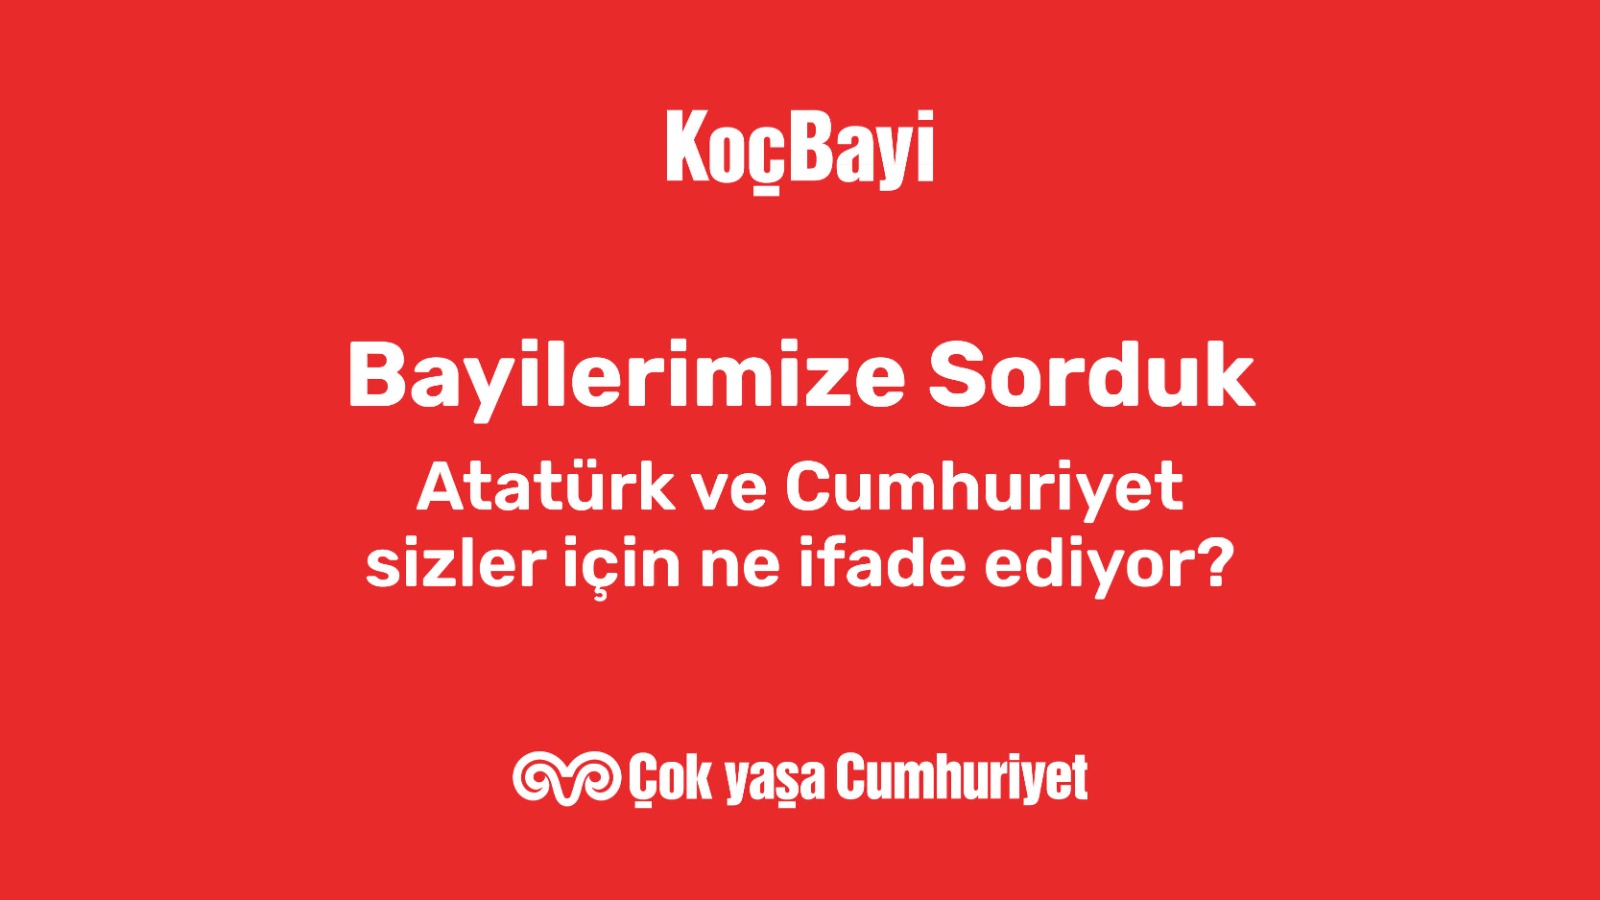 Bayilerimize sorduk: Atatürk ve Cumhuriyet sizin için ne anlam ifade ediyor? - 2